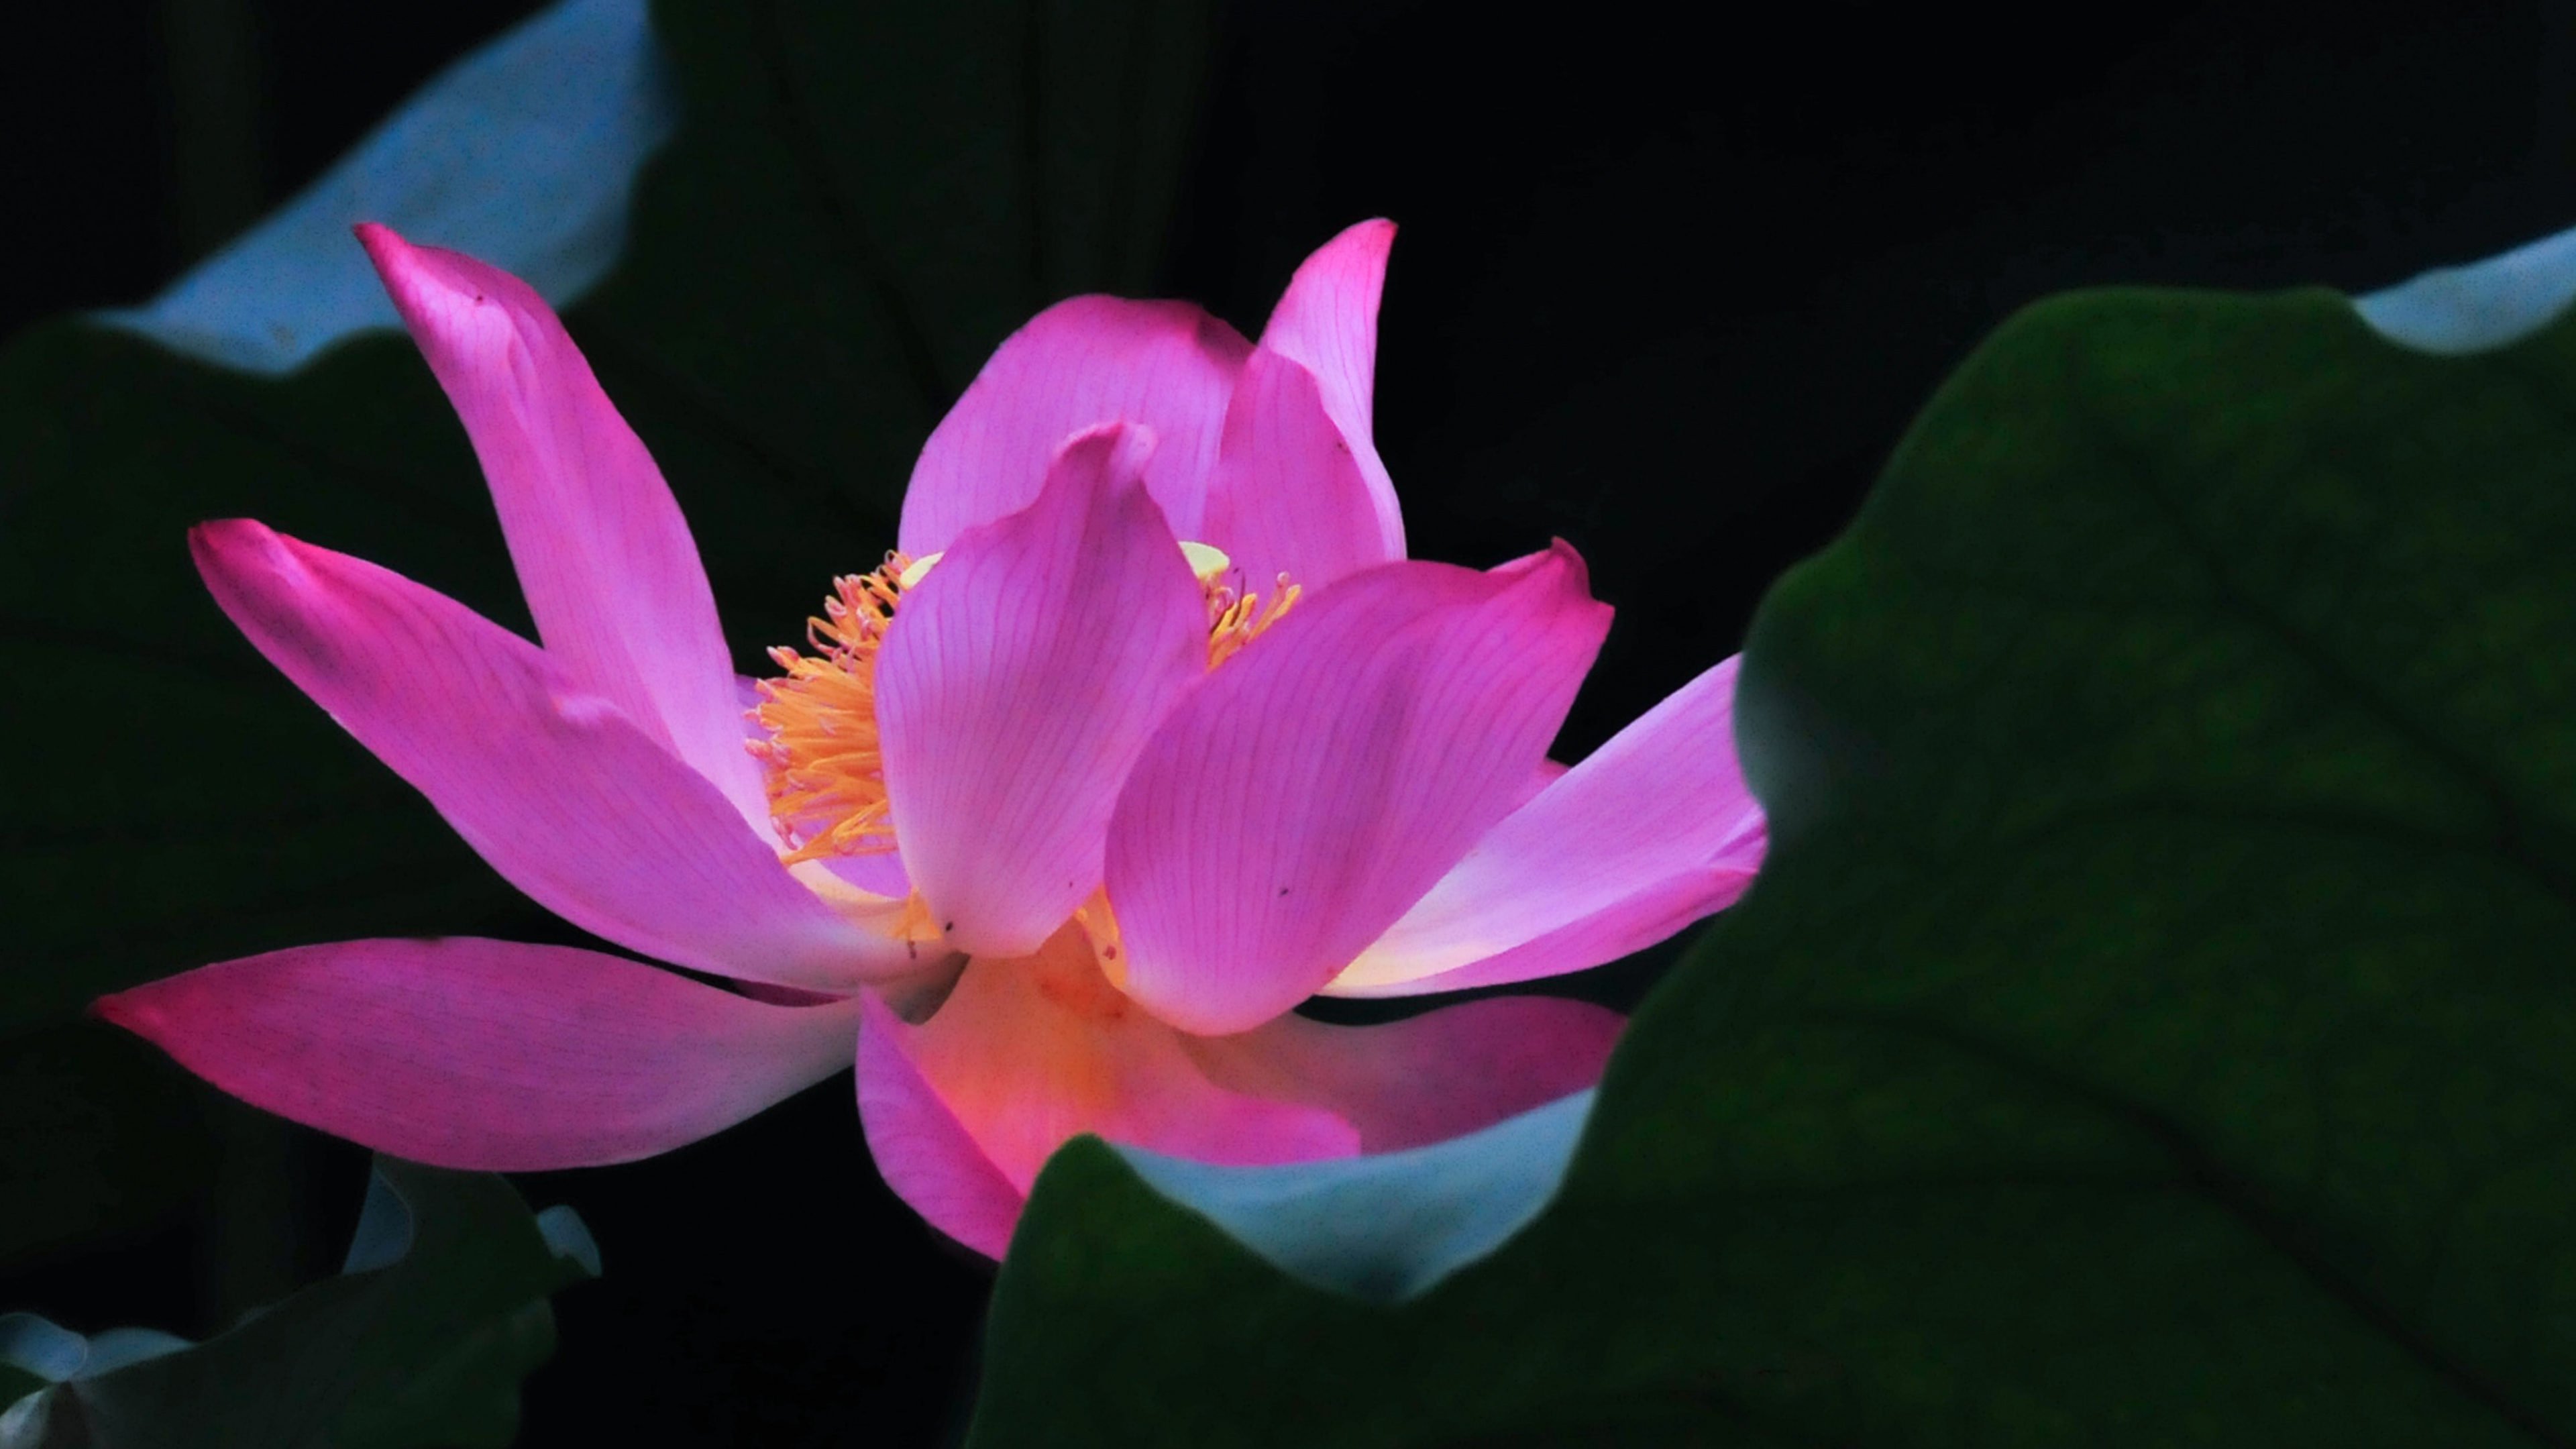 Pink Lotus Flower in Bloom. Wallpaper in 3840x2160 Resolution